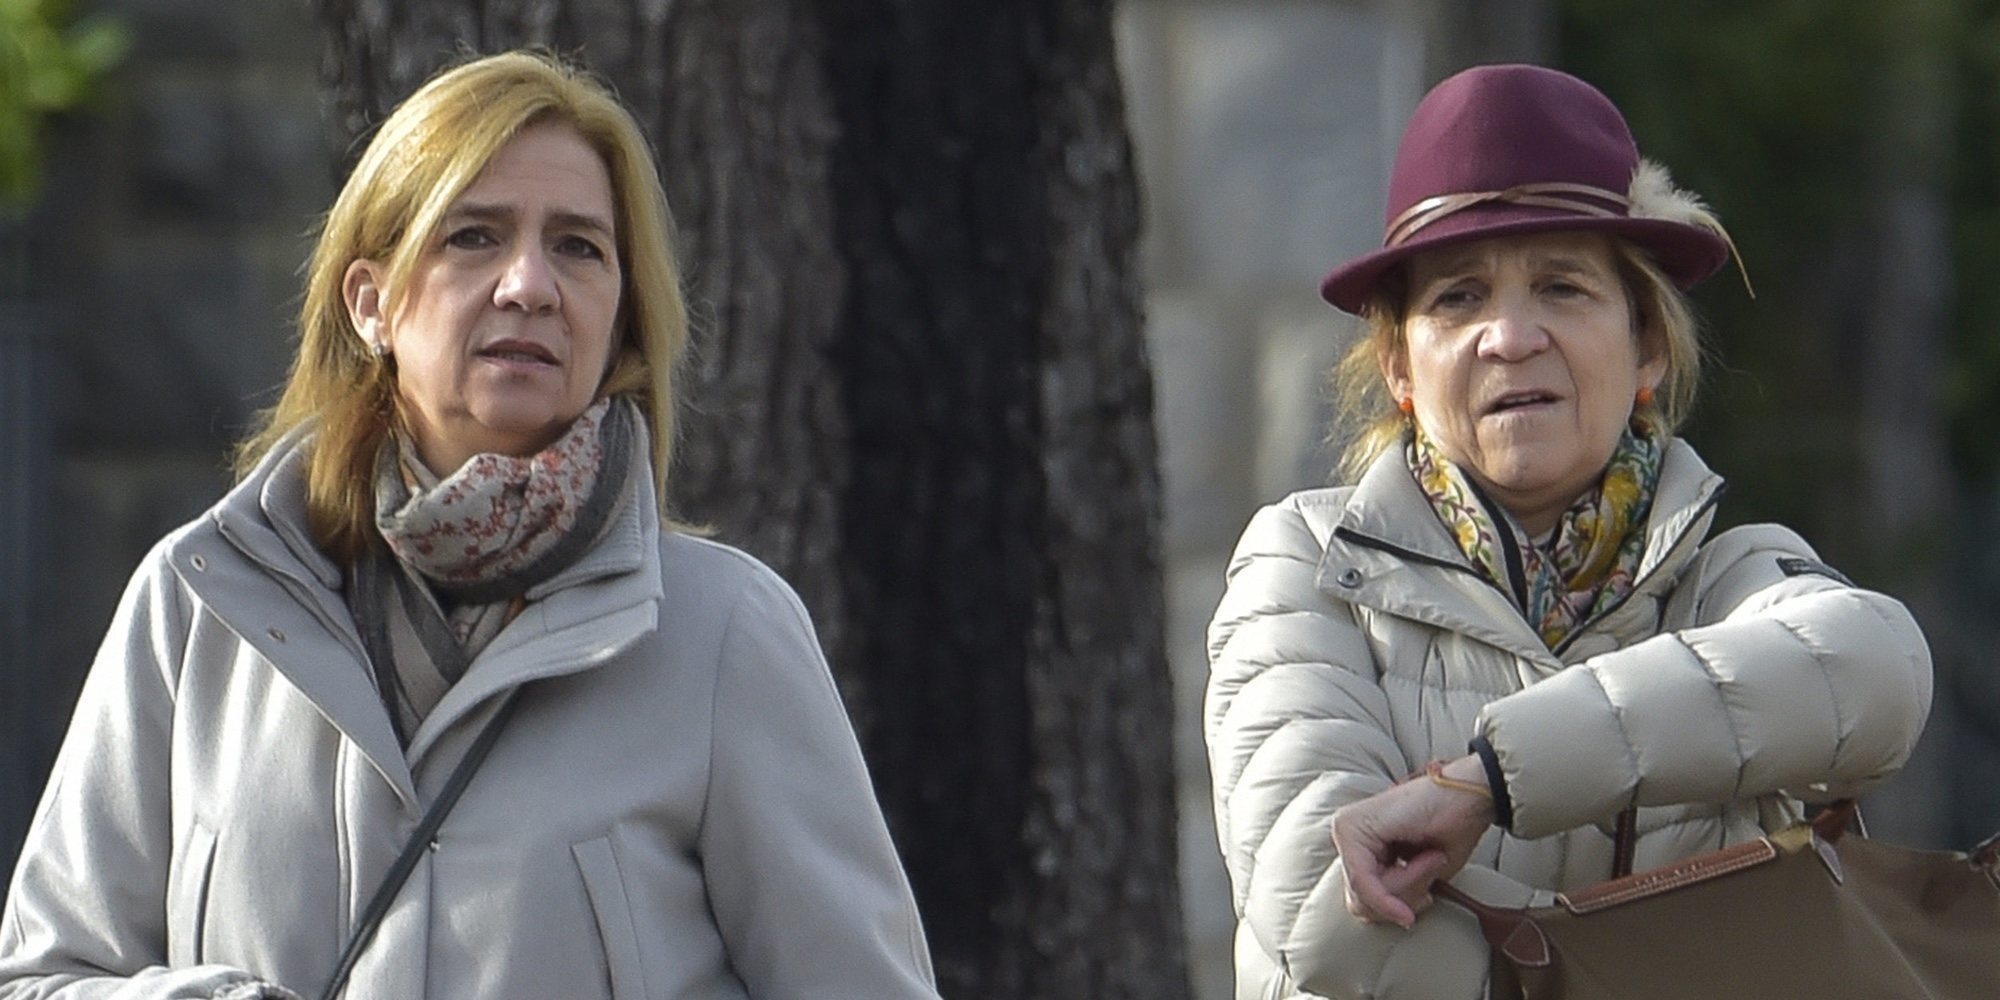 La Infanta Elena viaja a Ginebra para apoyar a la Infanta Cristina y a sus hijos en sus peores momentos